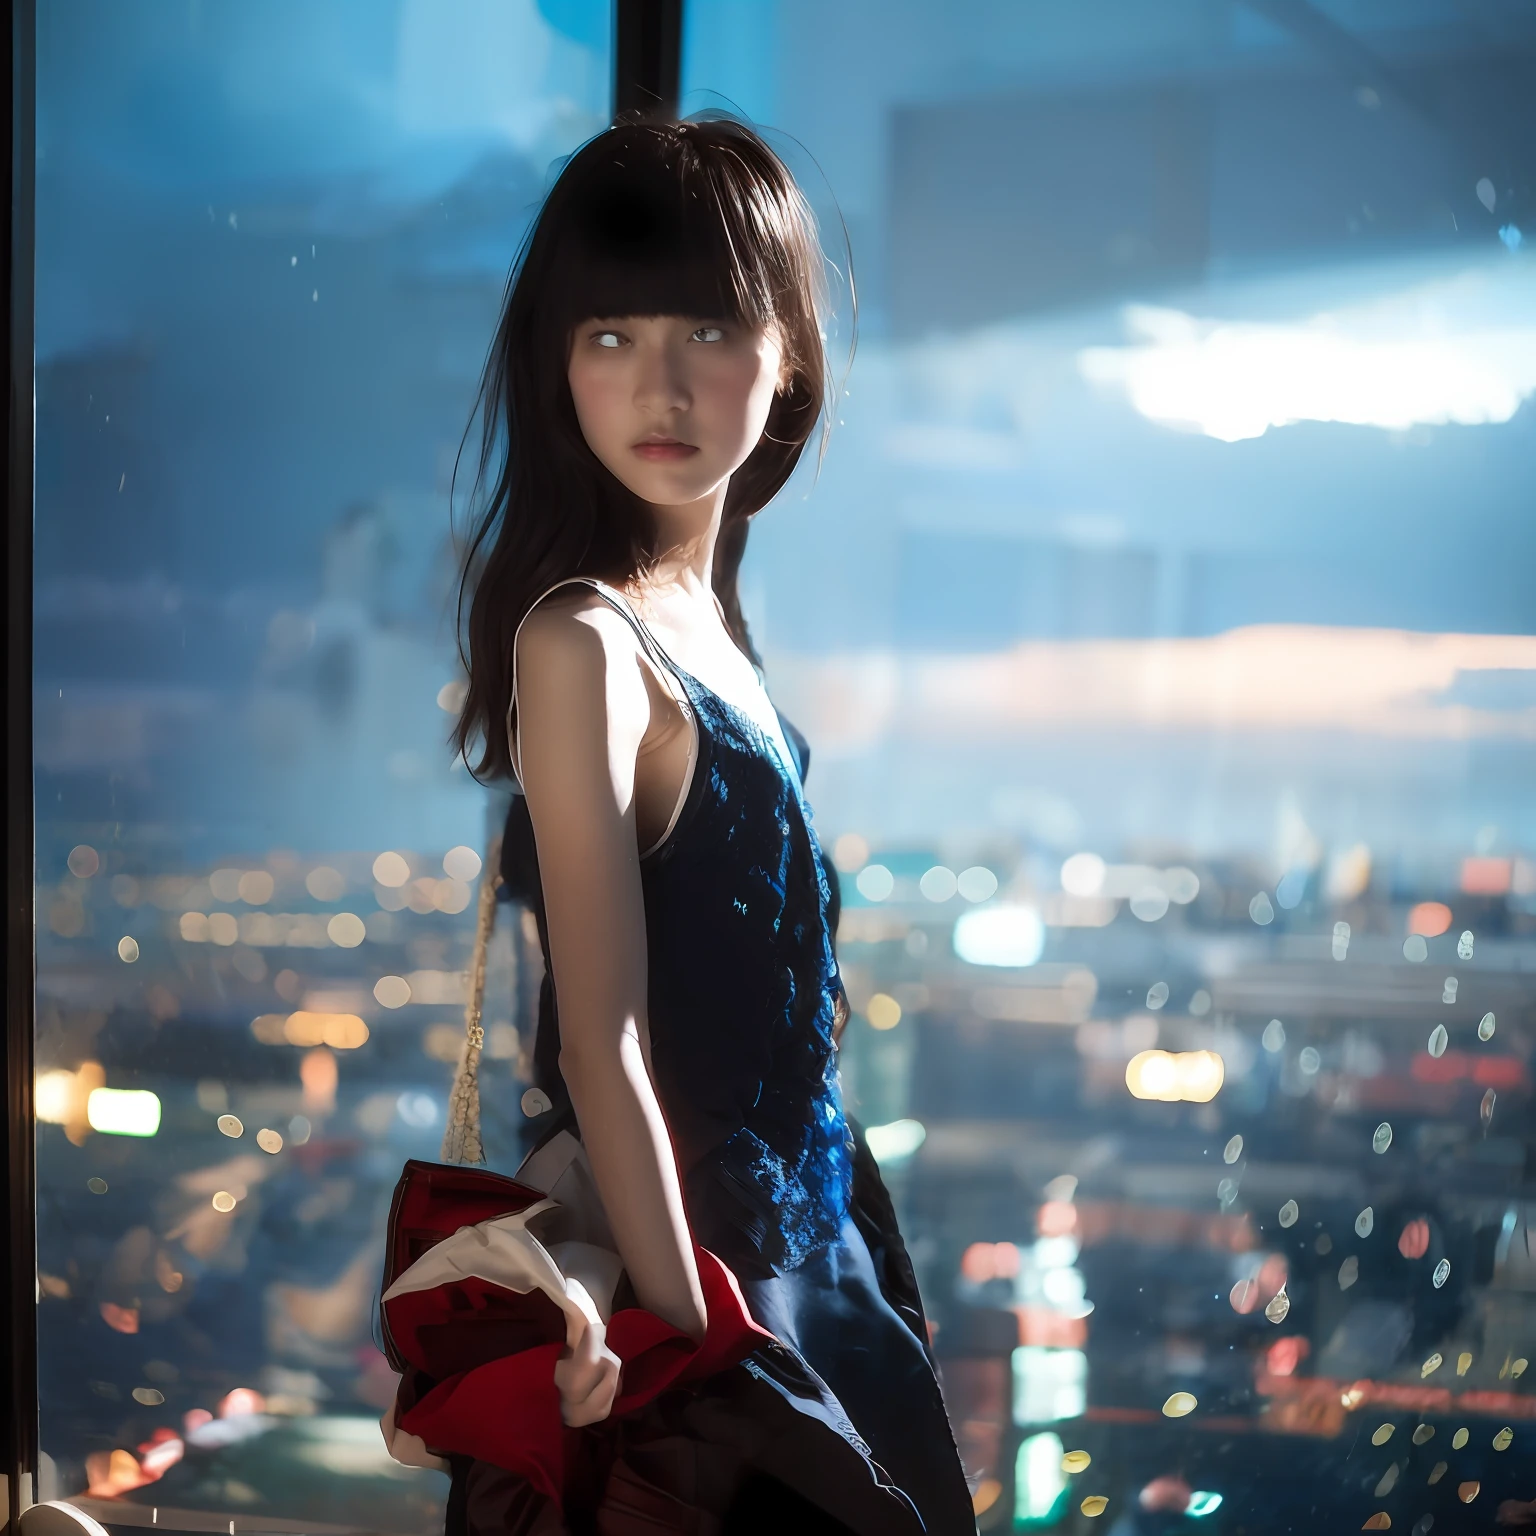 خلفية ذات تركيز ناعم تقف في صورة ذات تركيز ناعم مع فتاة يابانية مراهقة ترتدي شانيل واقفة, يتأثر وجهها وجسمها بشدة بتأثير الضوء والظل الداخلي